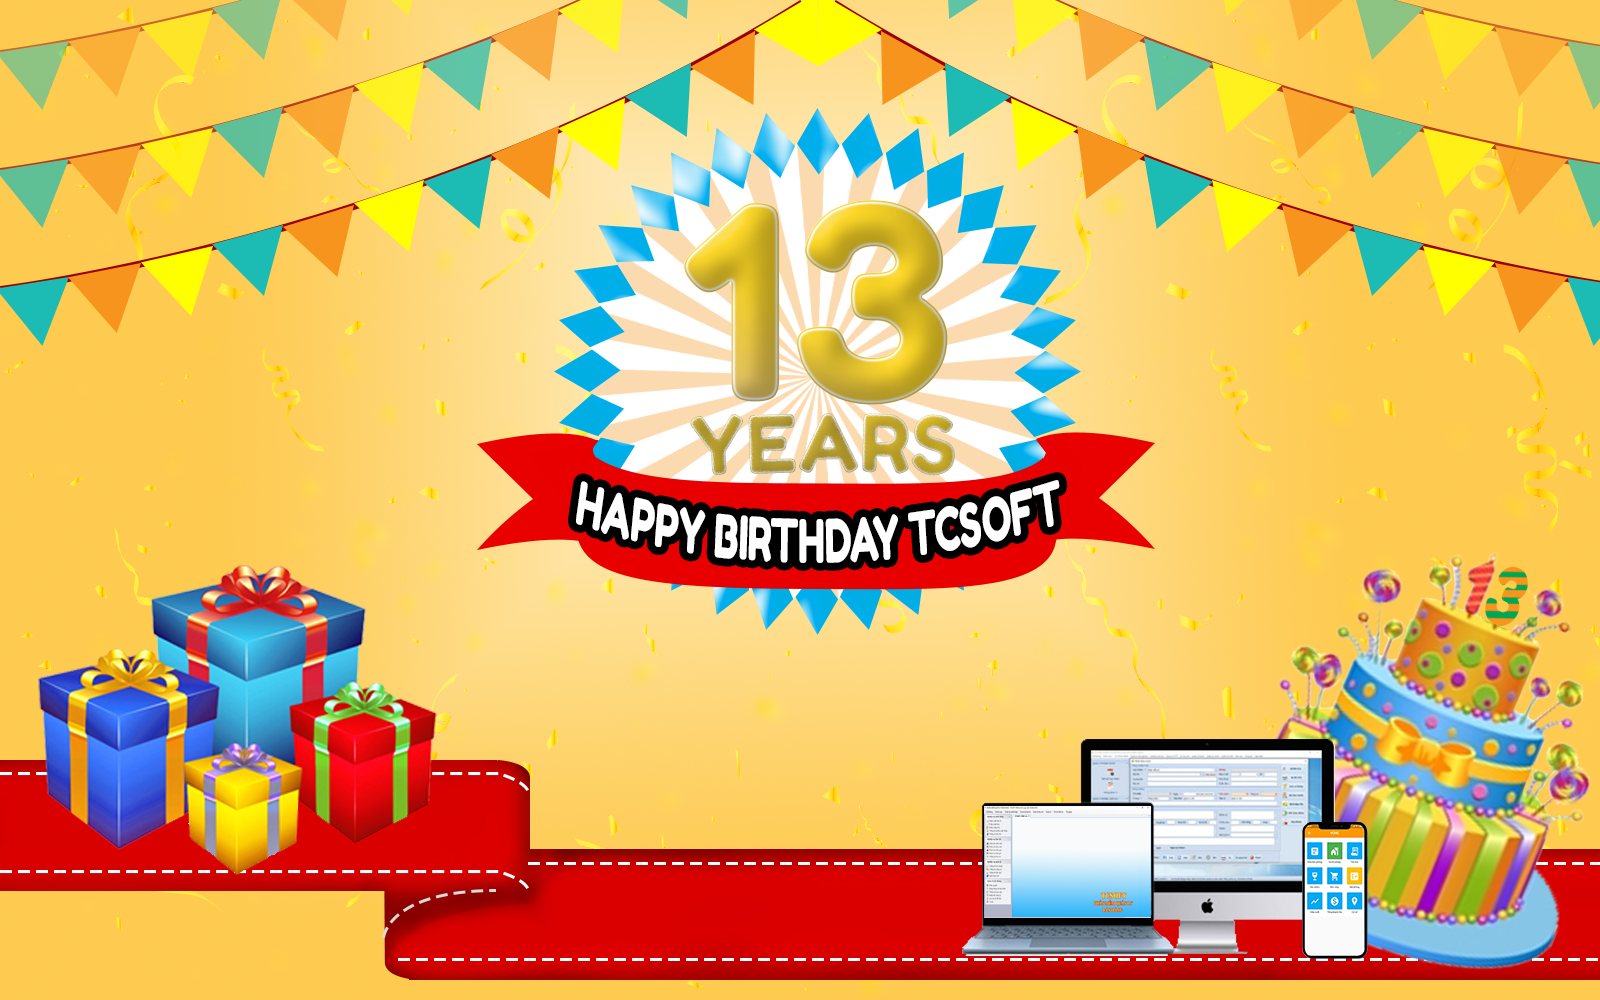 Mừng sinh nhật tuổi 13 của TCSOFT